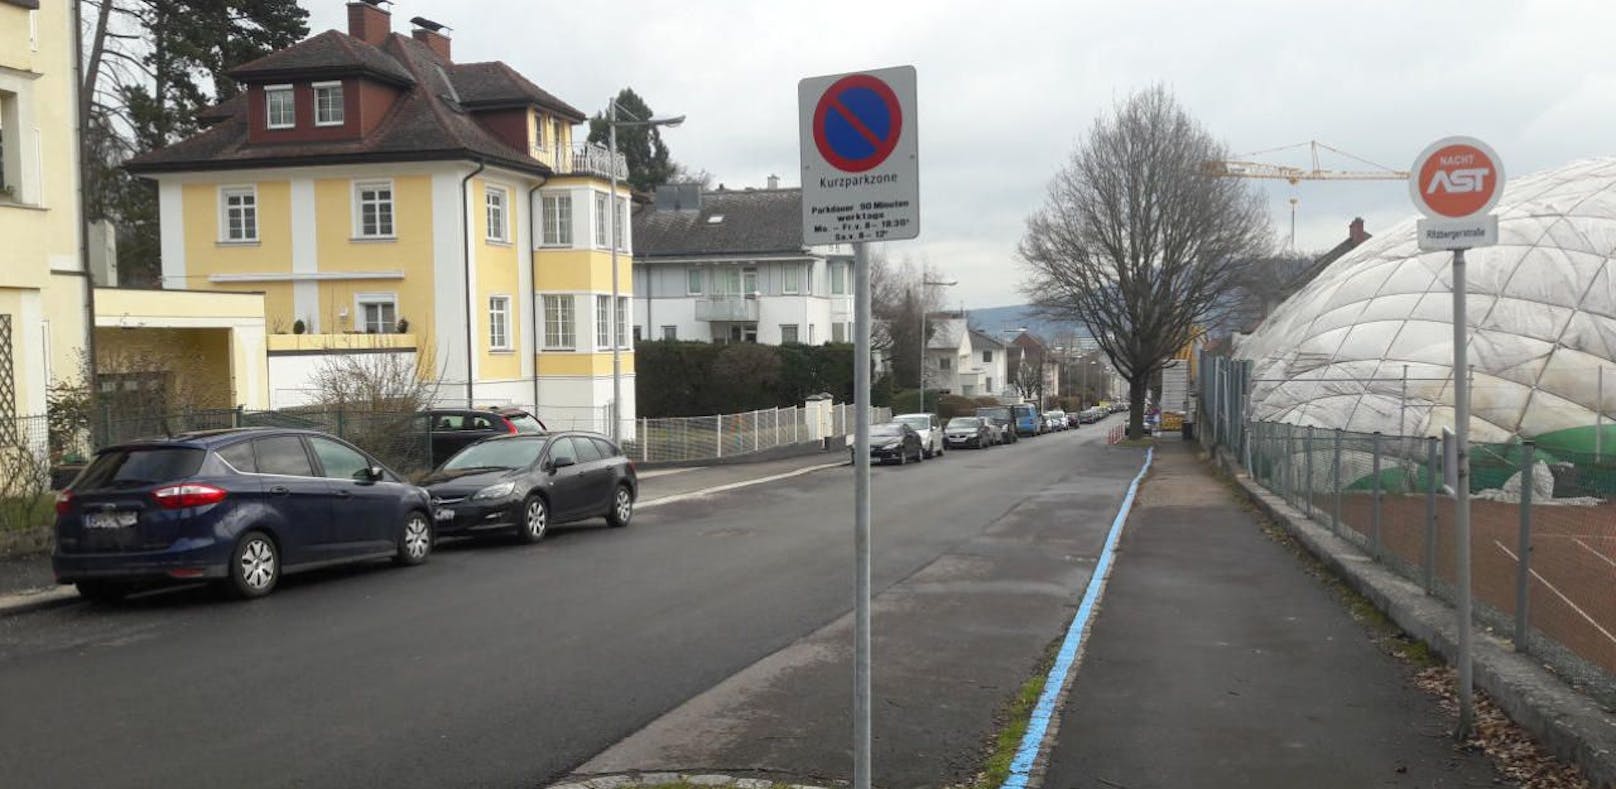 Kurzparkzonen in Linz werden bald wieder kostenpflichtig.